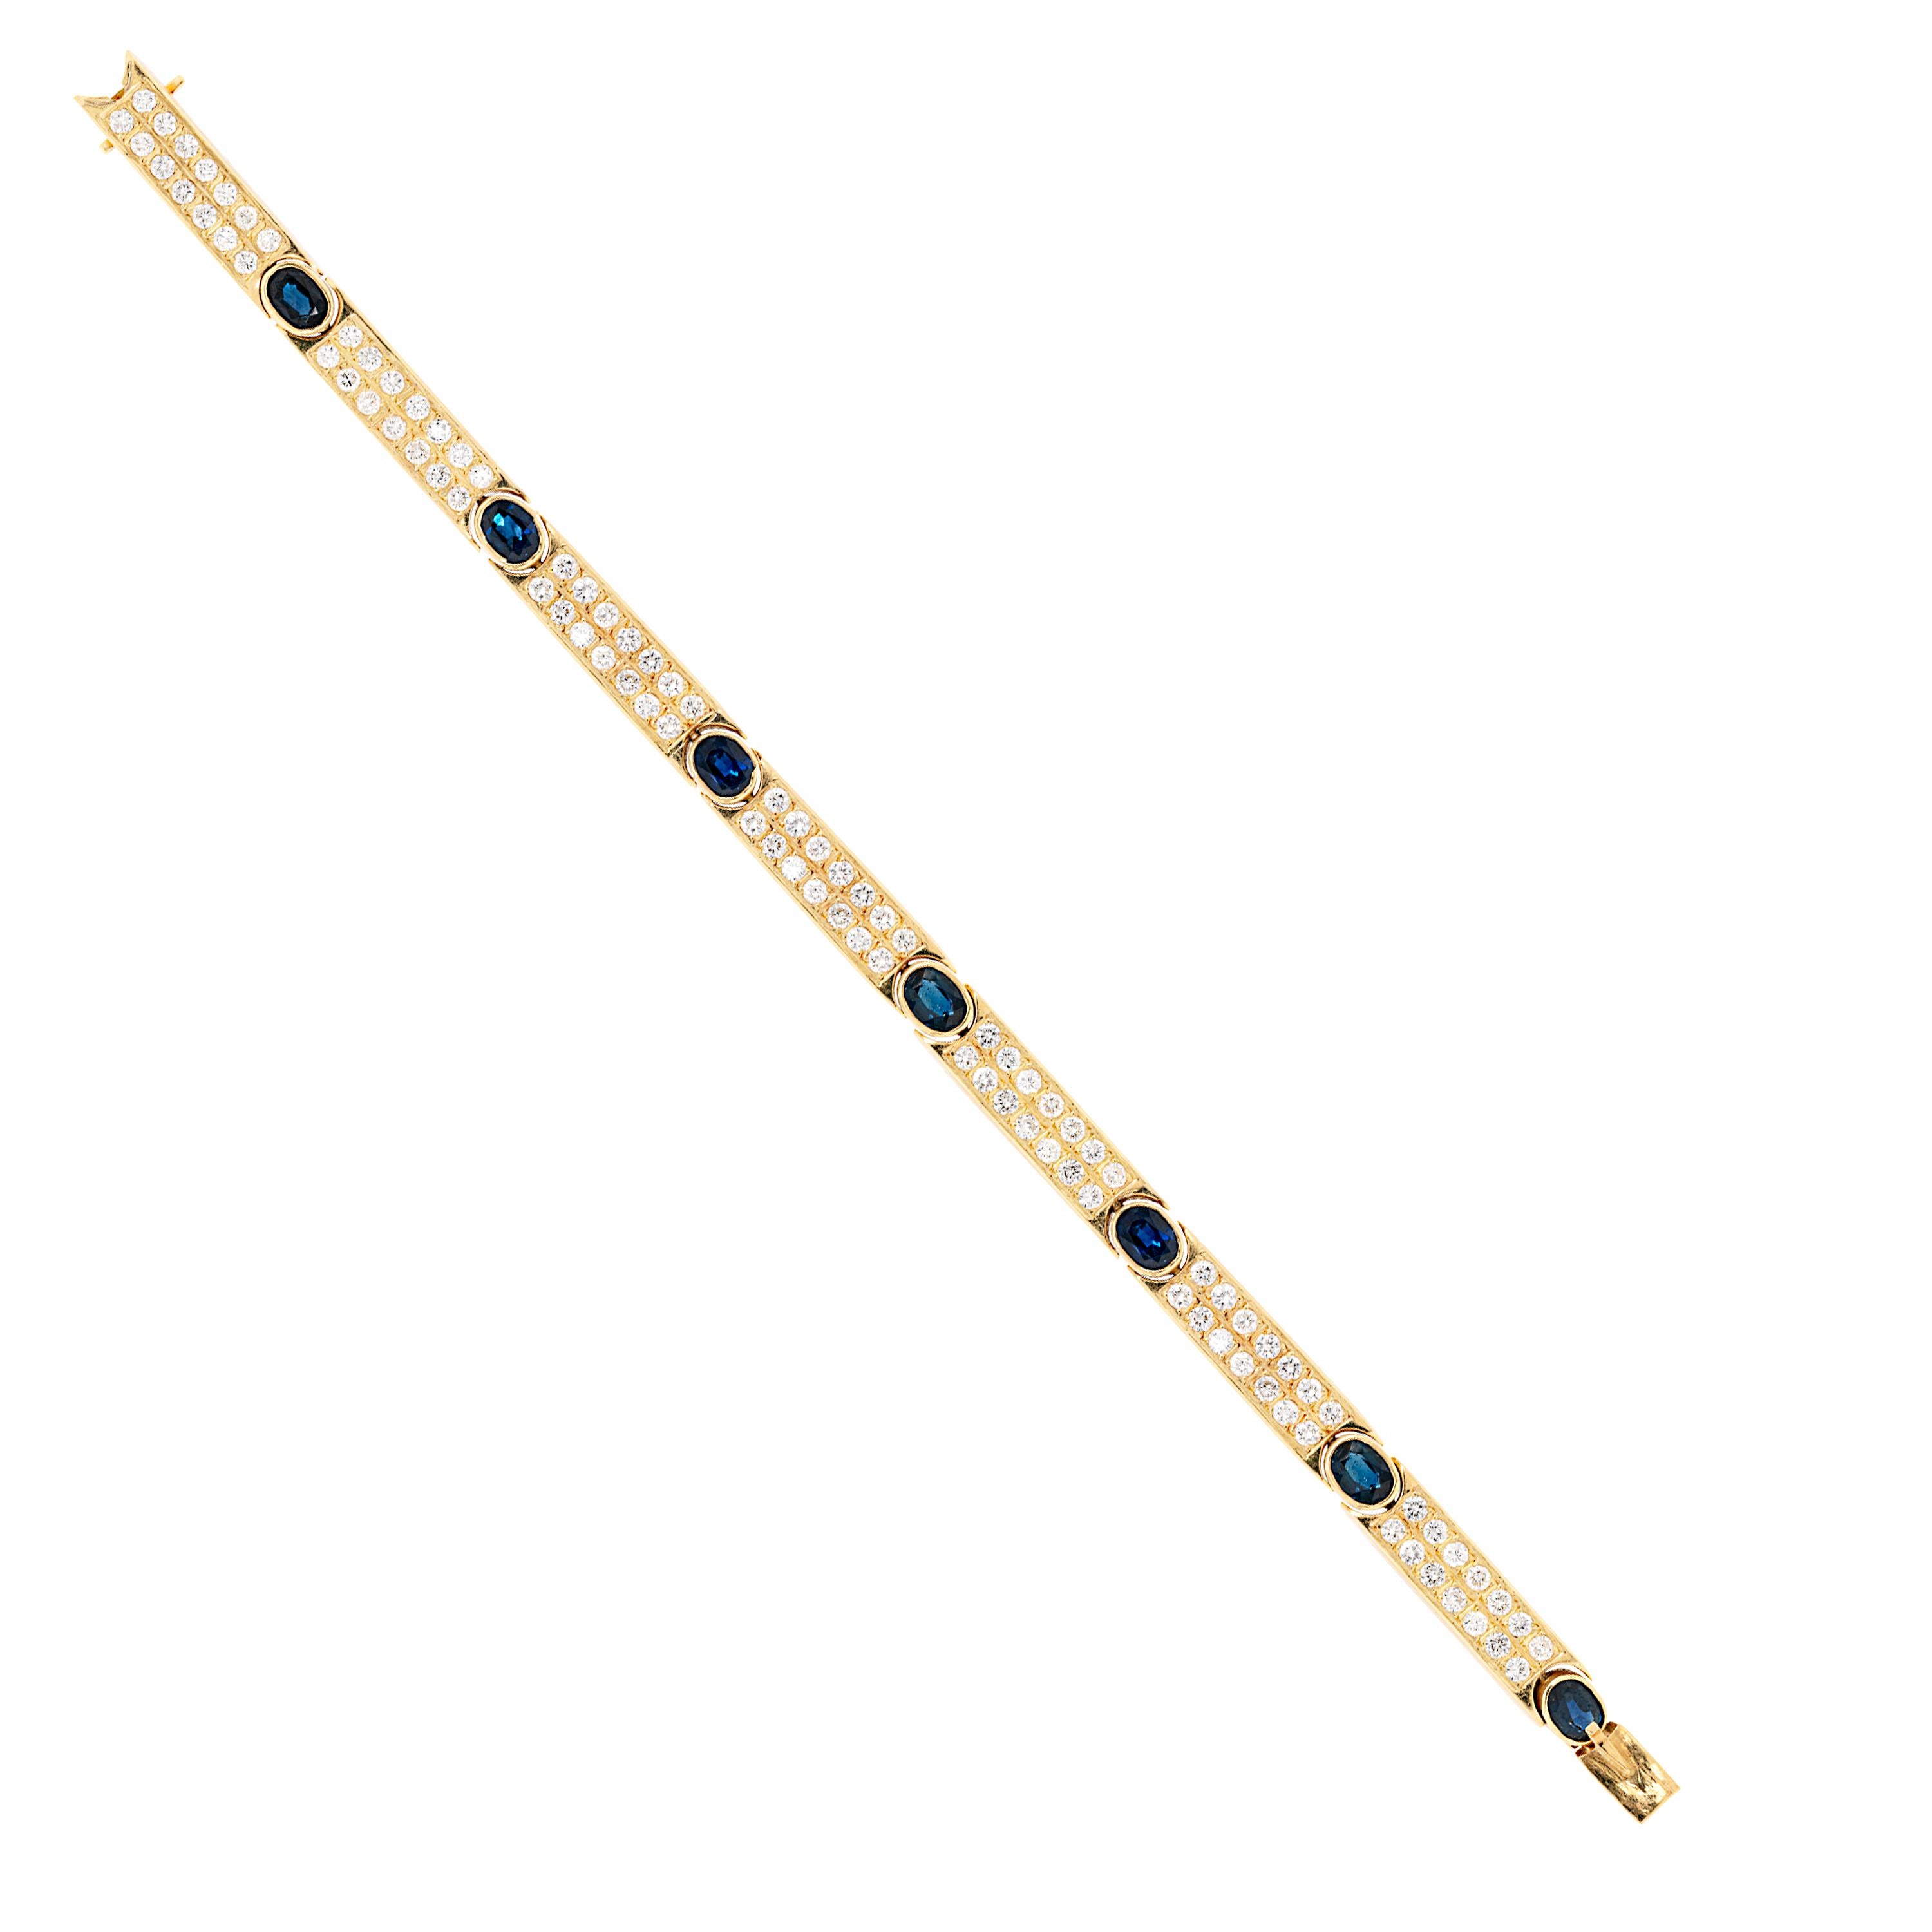 Armband im Vintage-Stil mit sieben diamantbesetzten Goldbarren, die jeweils mit sieben ovalen blauen Saphiren mit einem Gesamtgewicht von ca. 5,00ct+ verbunden sind, die alle in offenen Rubover-Fassungen montiert sind. Das Armband enthält insgesamt